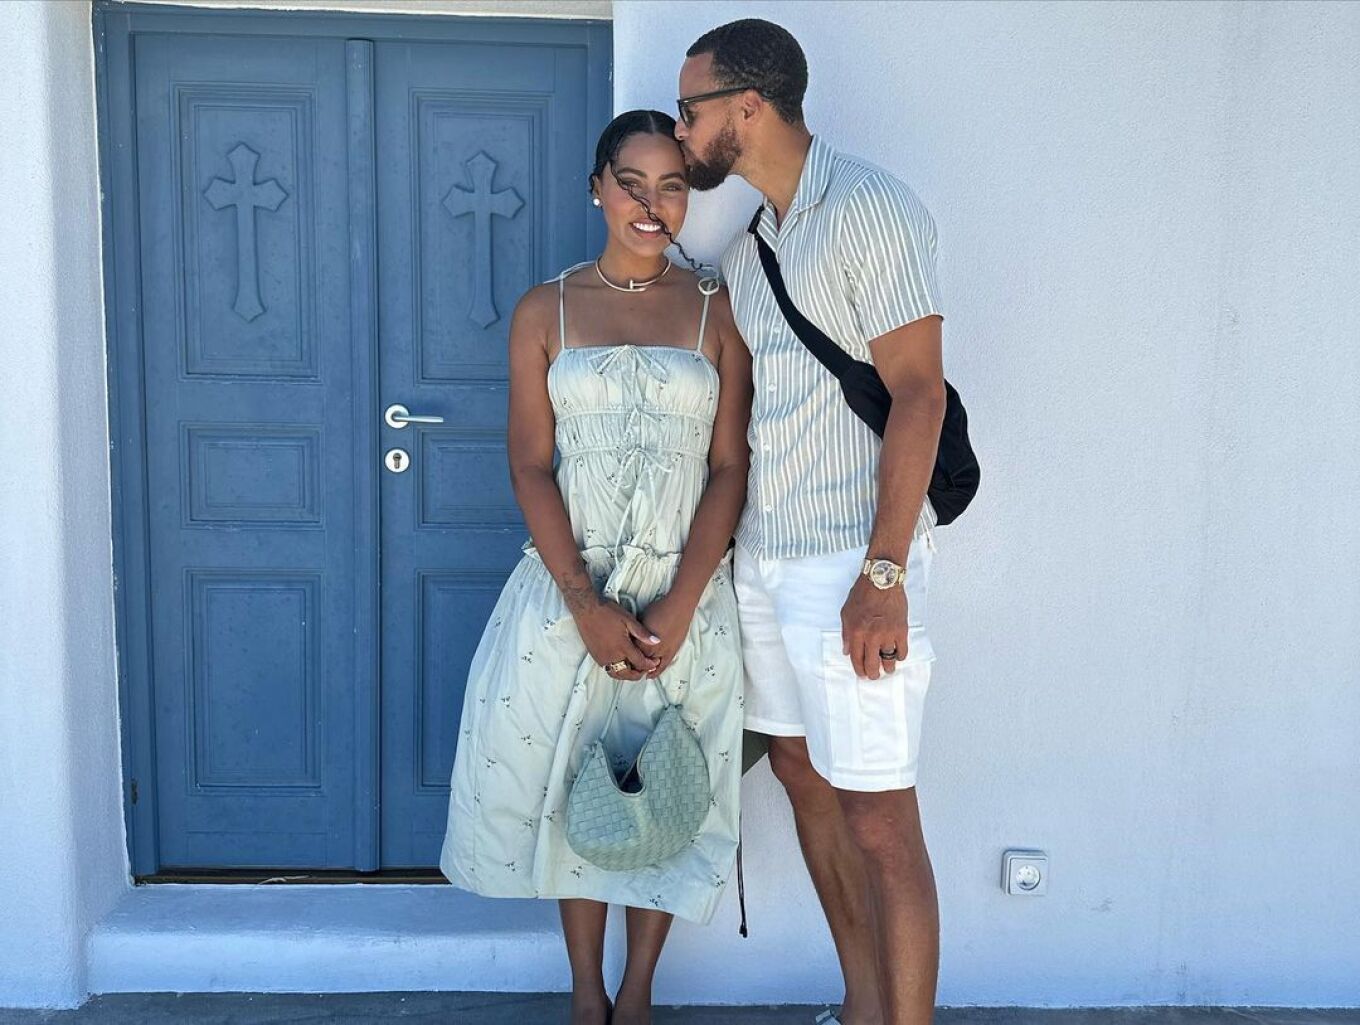 Στεφ Κάρι: Ο αστέρας του NBA γιόρτασε την επέτειο του γάμου του στην Σαντορίνη